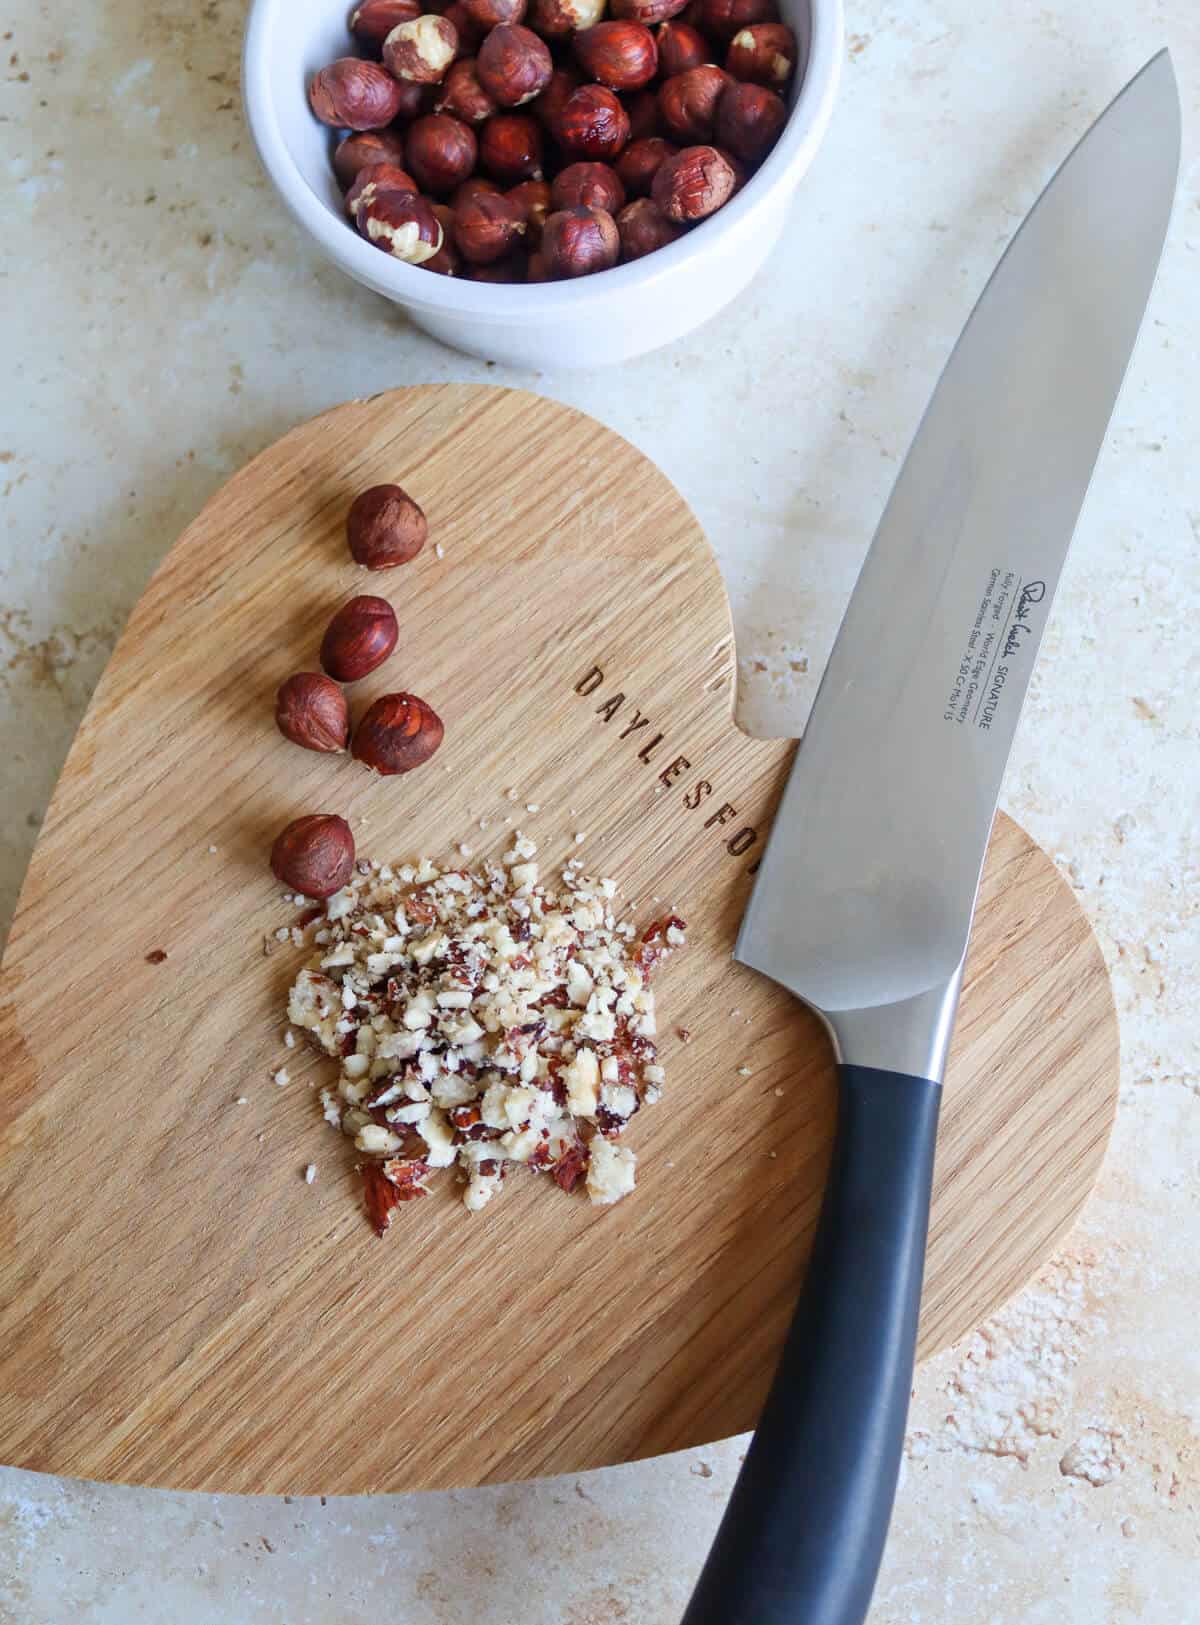 Chopped hazelnuts on a wooden board. 